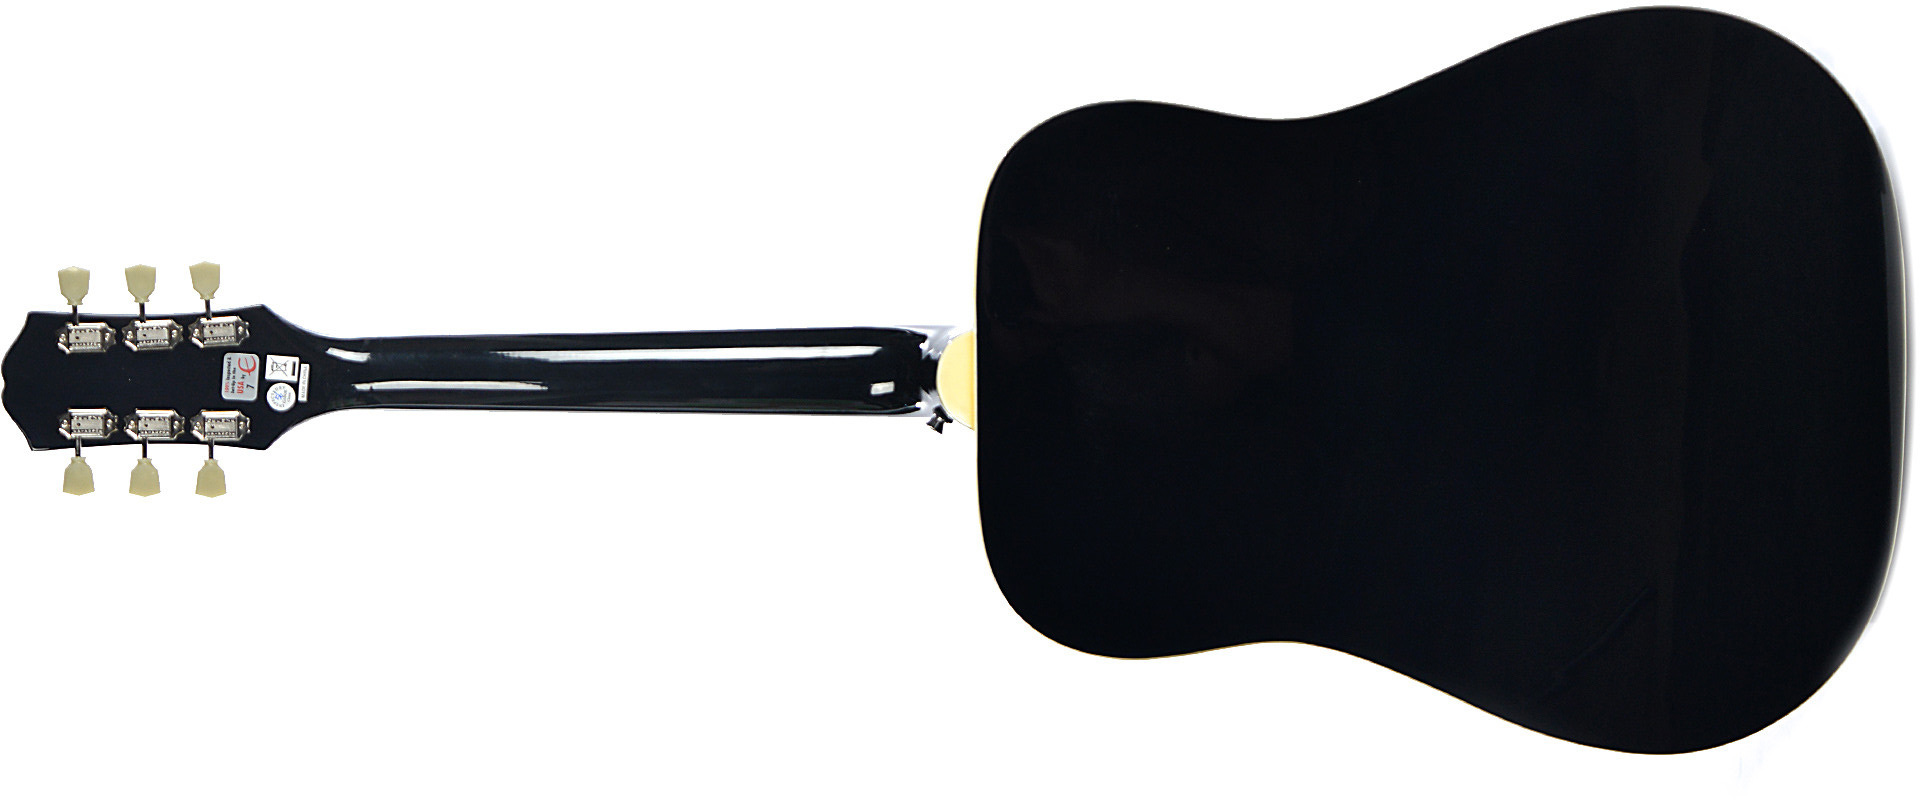 Epiphone Pro-1 Plus Acoustic Dreadnought Epicea Acajou - Ebony - Acoustic guitar & electro - Variation 1